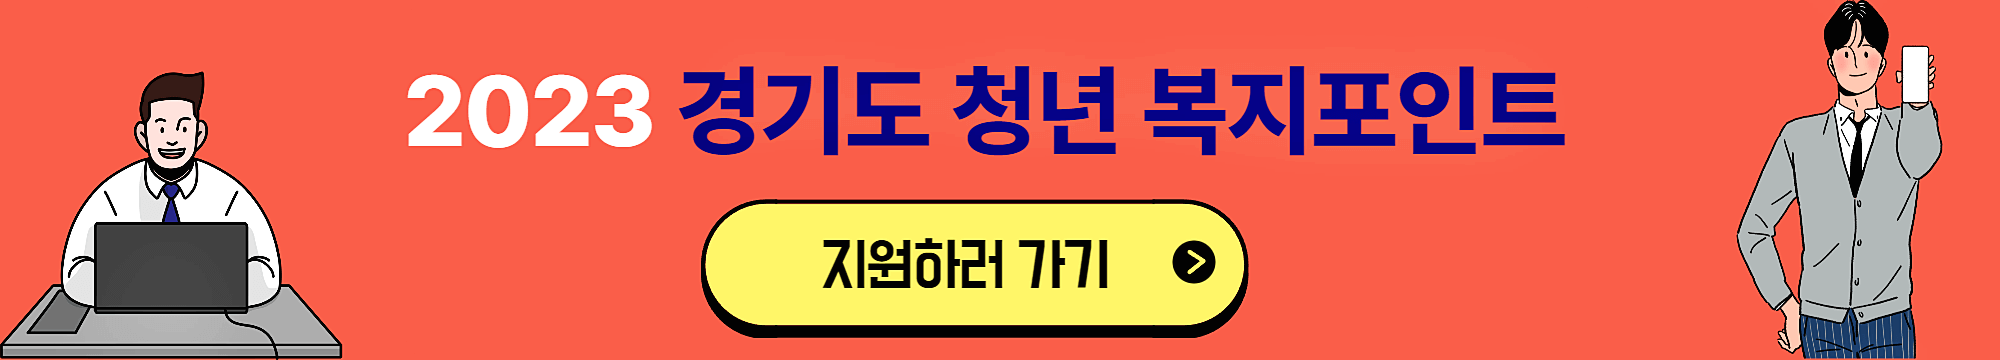 2023년 경기도 청년 복지 포인트